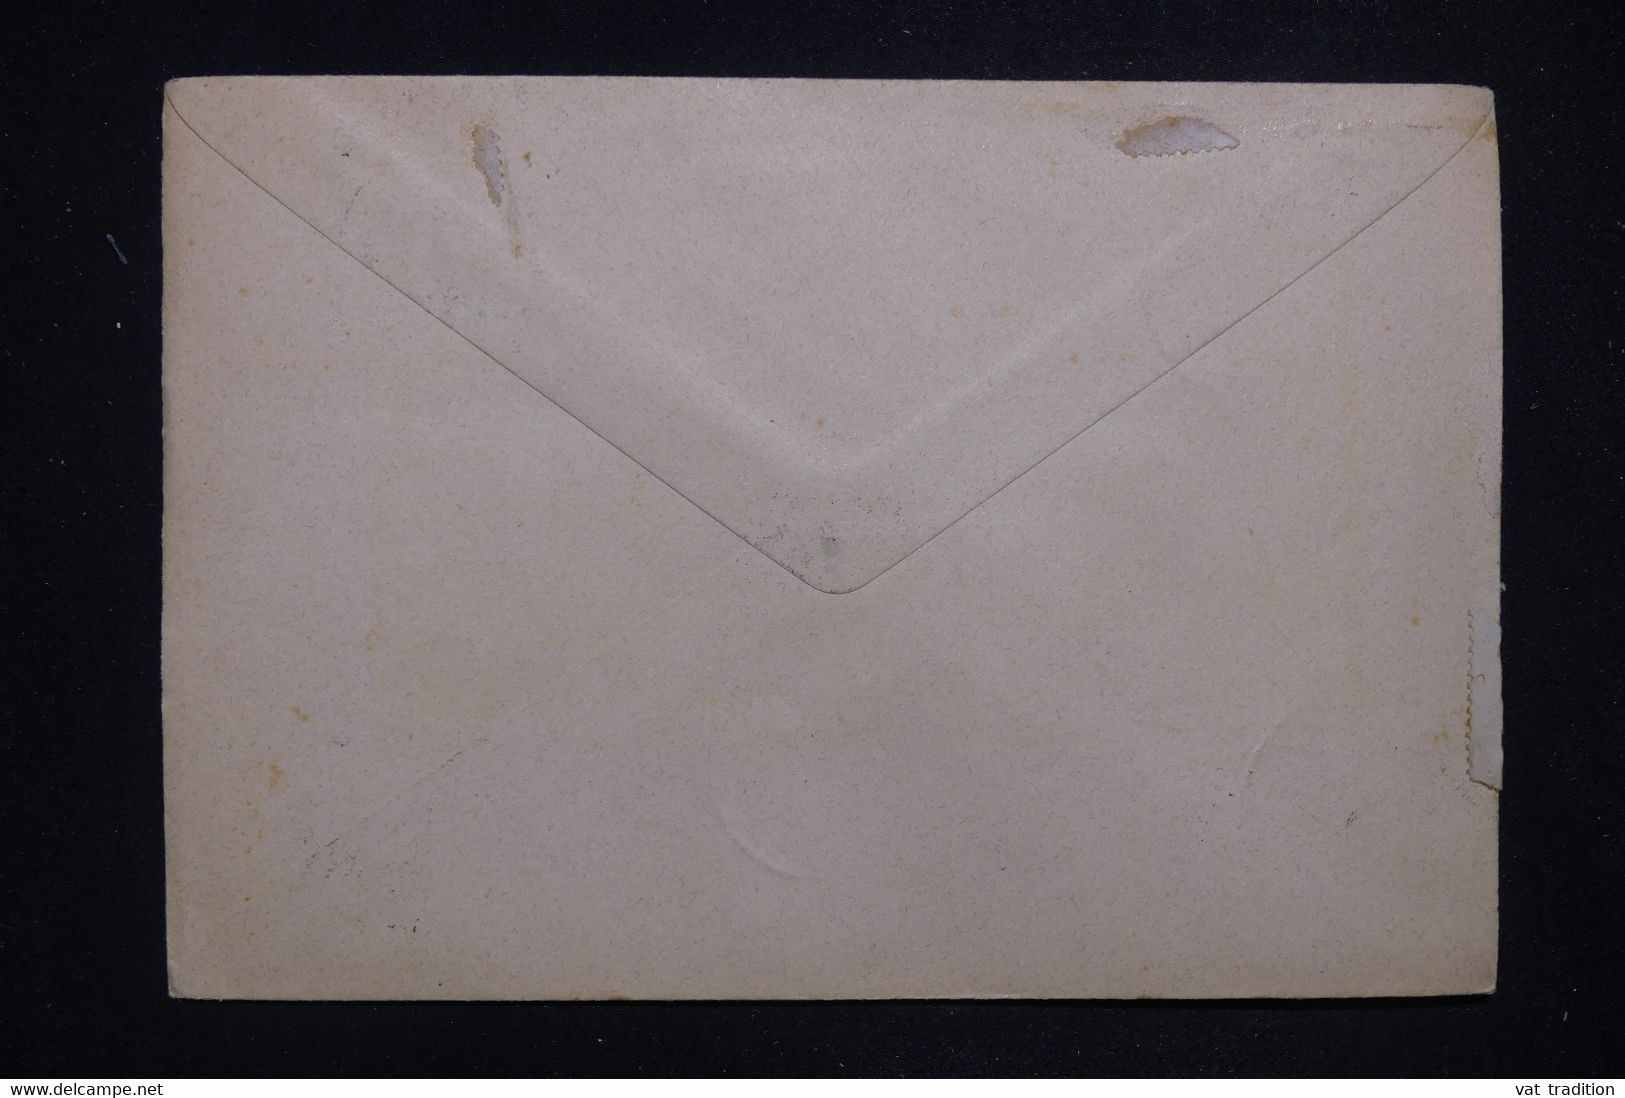 GRECE - Diverses Valeurs Sur Enveloppe Avec Oblitération En 1916, En L'état - L 130402 - Briefe U. Dokumente